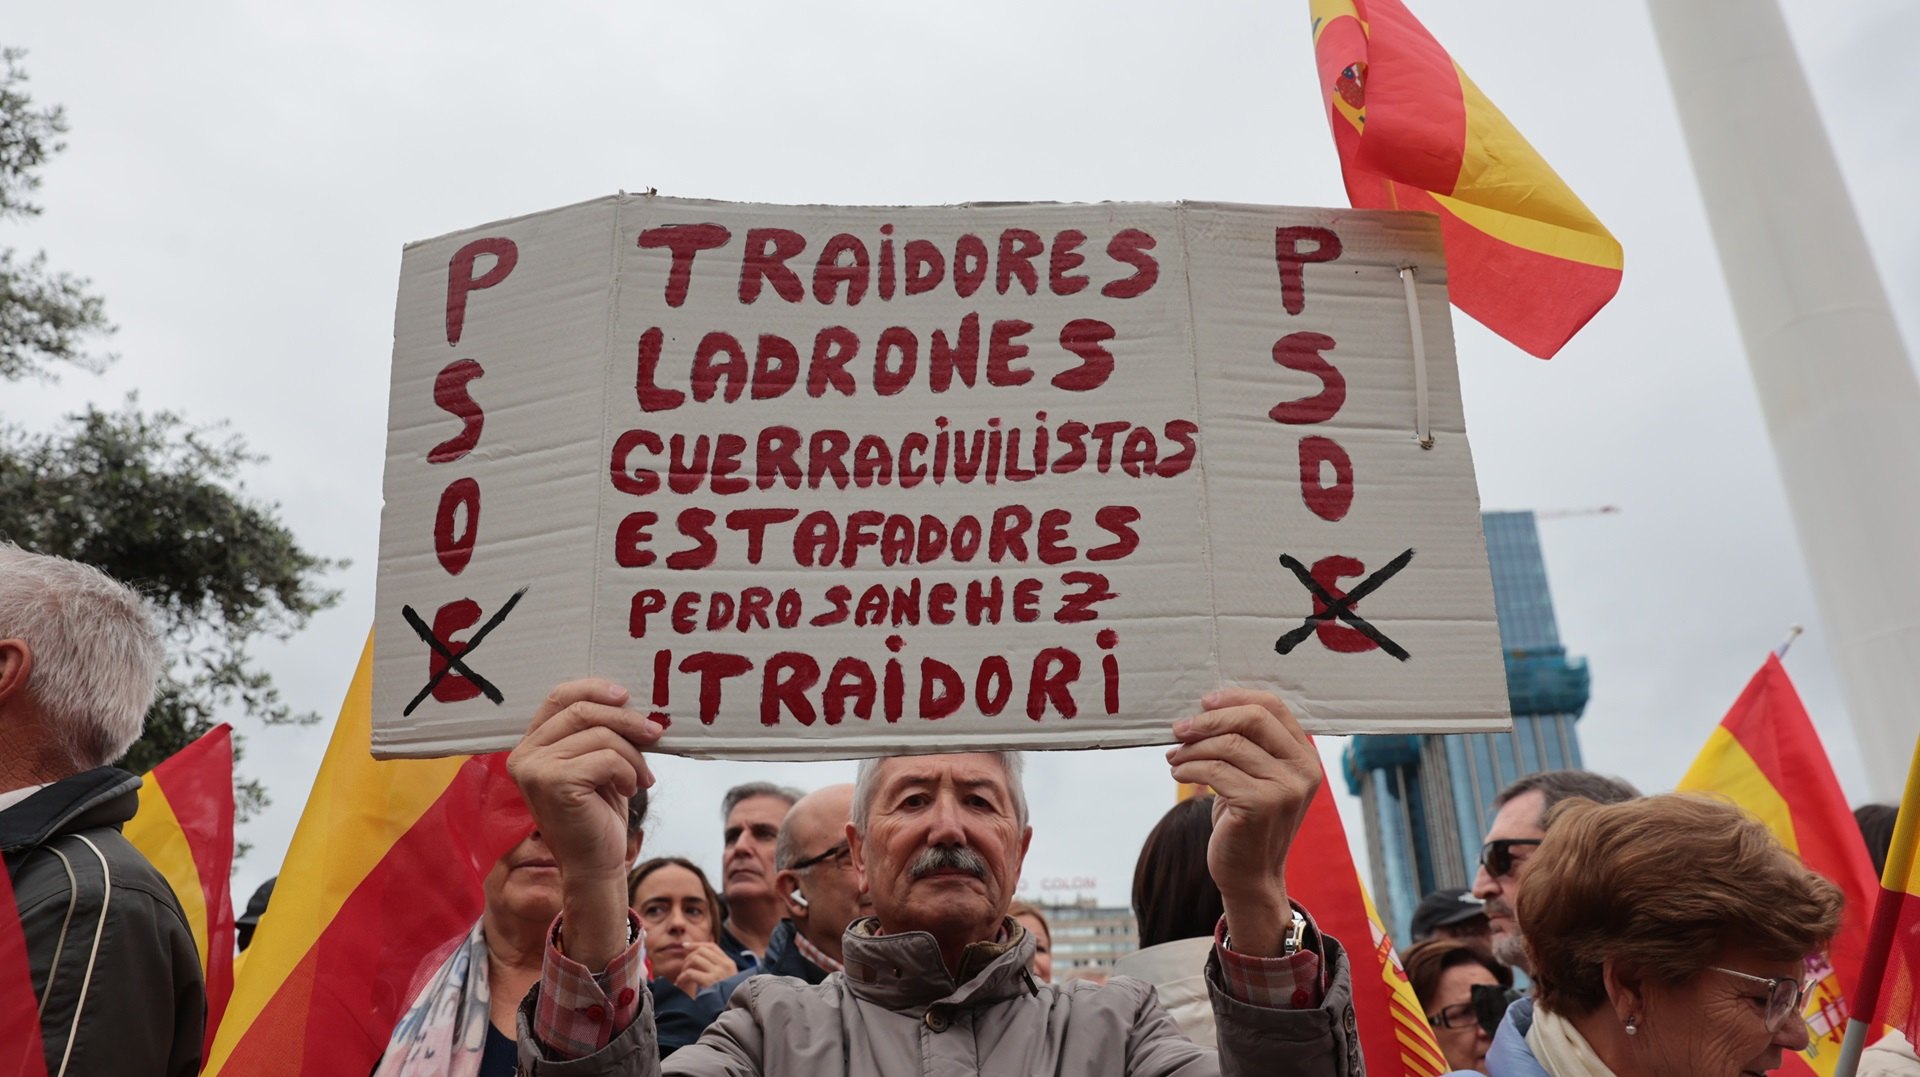 La Fundación Francisco Franco tacha al PSOE "de organización delincuencial" por negociar la amnistía